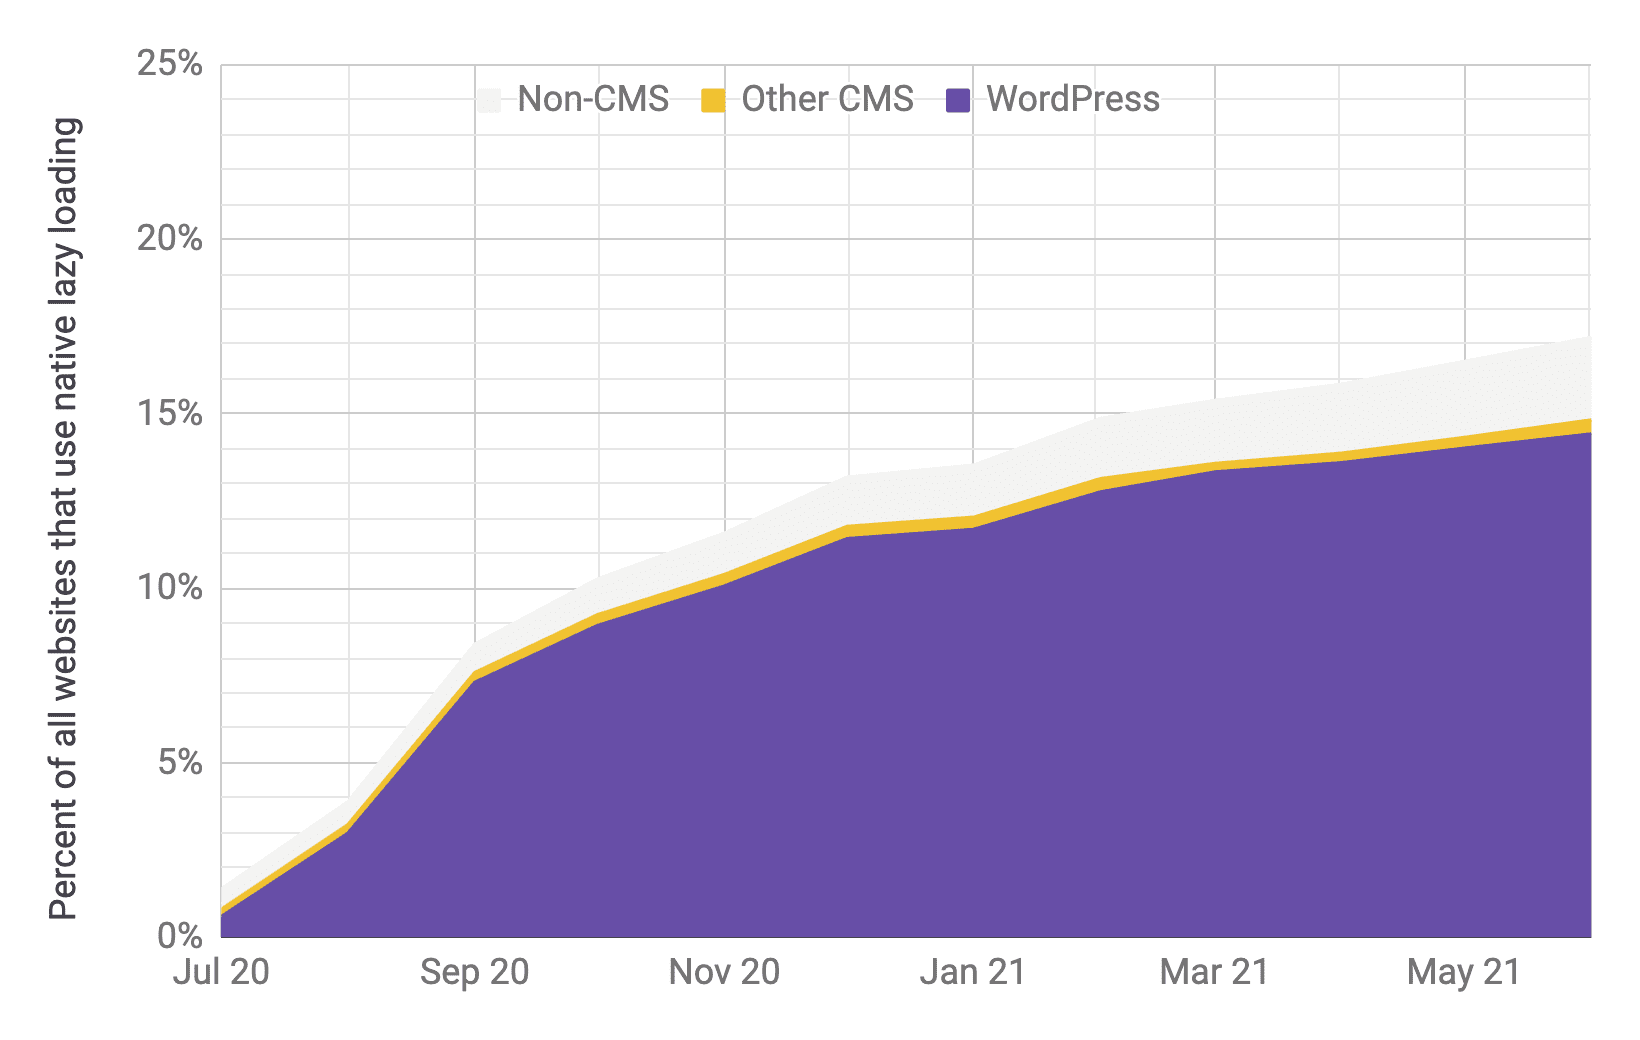 时间序列图表，显示与其他 CMS 和非 CMS 相比，以 WordPress 占据主导地位的延迟加载采用情况，比例与上一个图表中大致相当。数据显示，从 2020 年 7 月到 2021 年 6 月，总采用率从 1% 迅速上升到 17%。